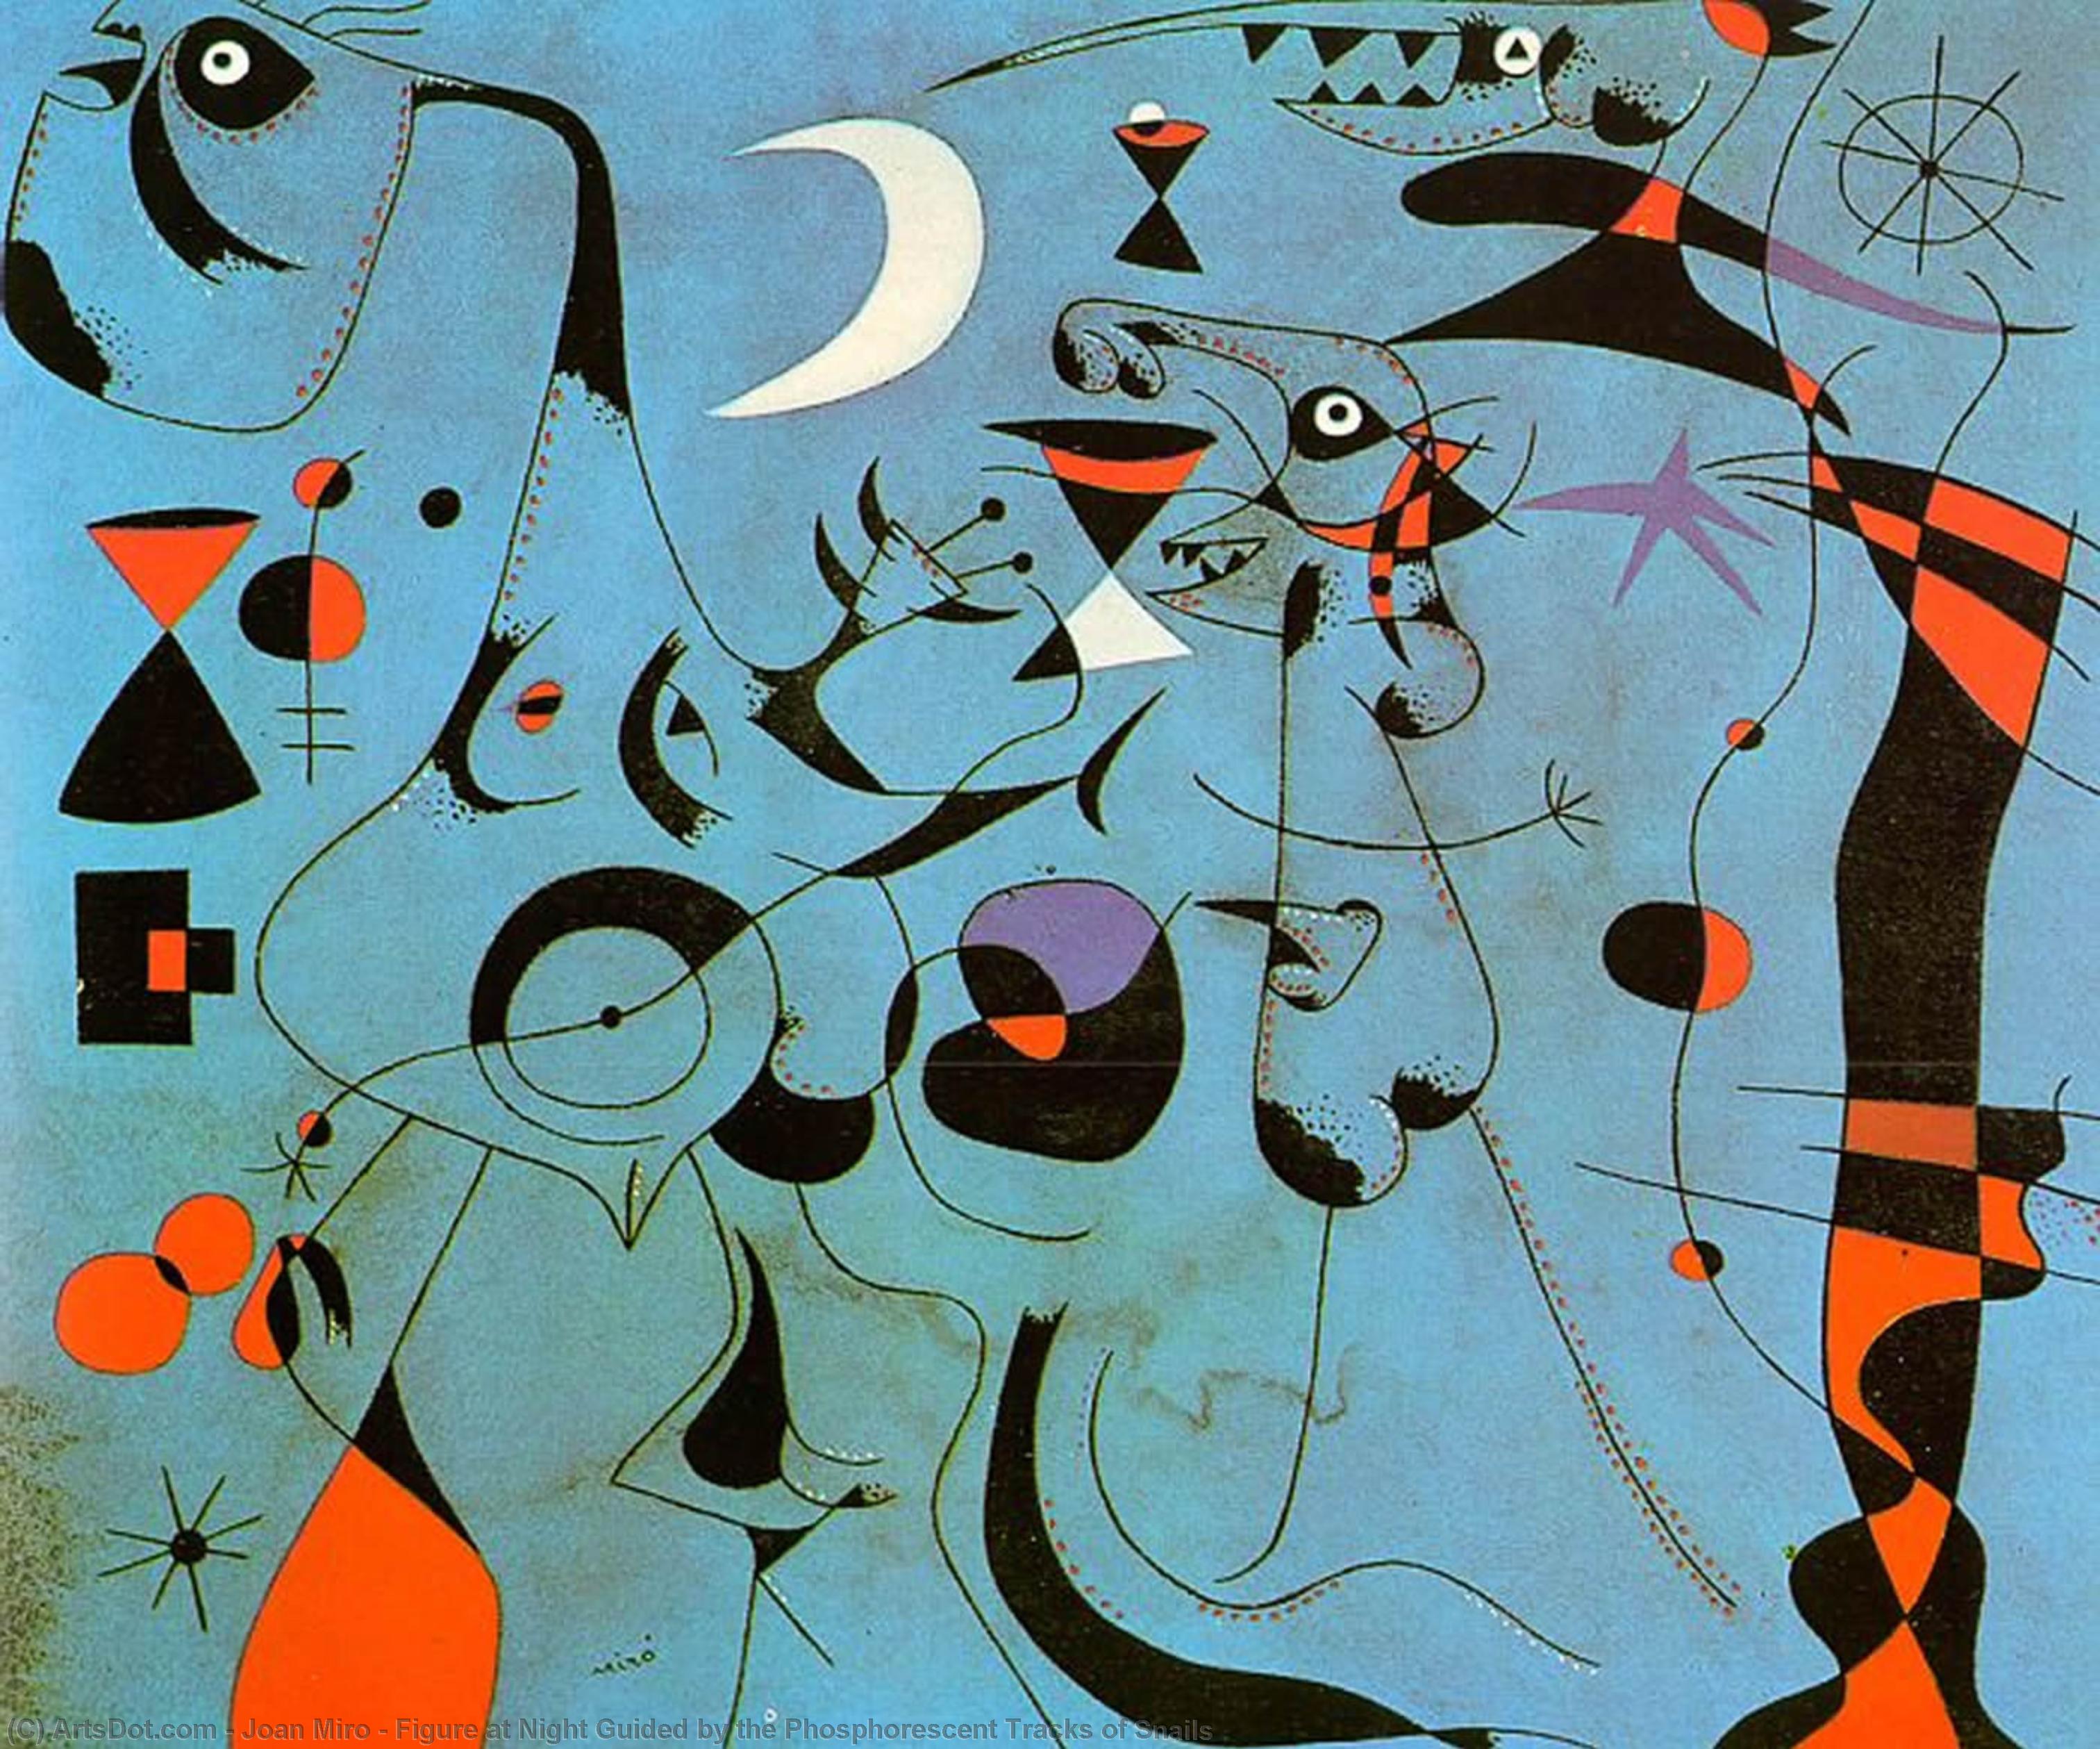 Wikioo.org - Die Enzyklopädie bildender Kunst - Malerei, Kunstwerk von Joan Miro - figur in der nacht durch die phosphoreszierenden tracks von schnecken guided